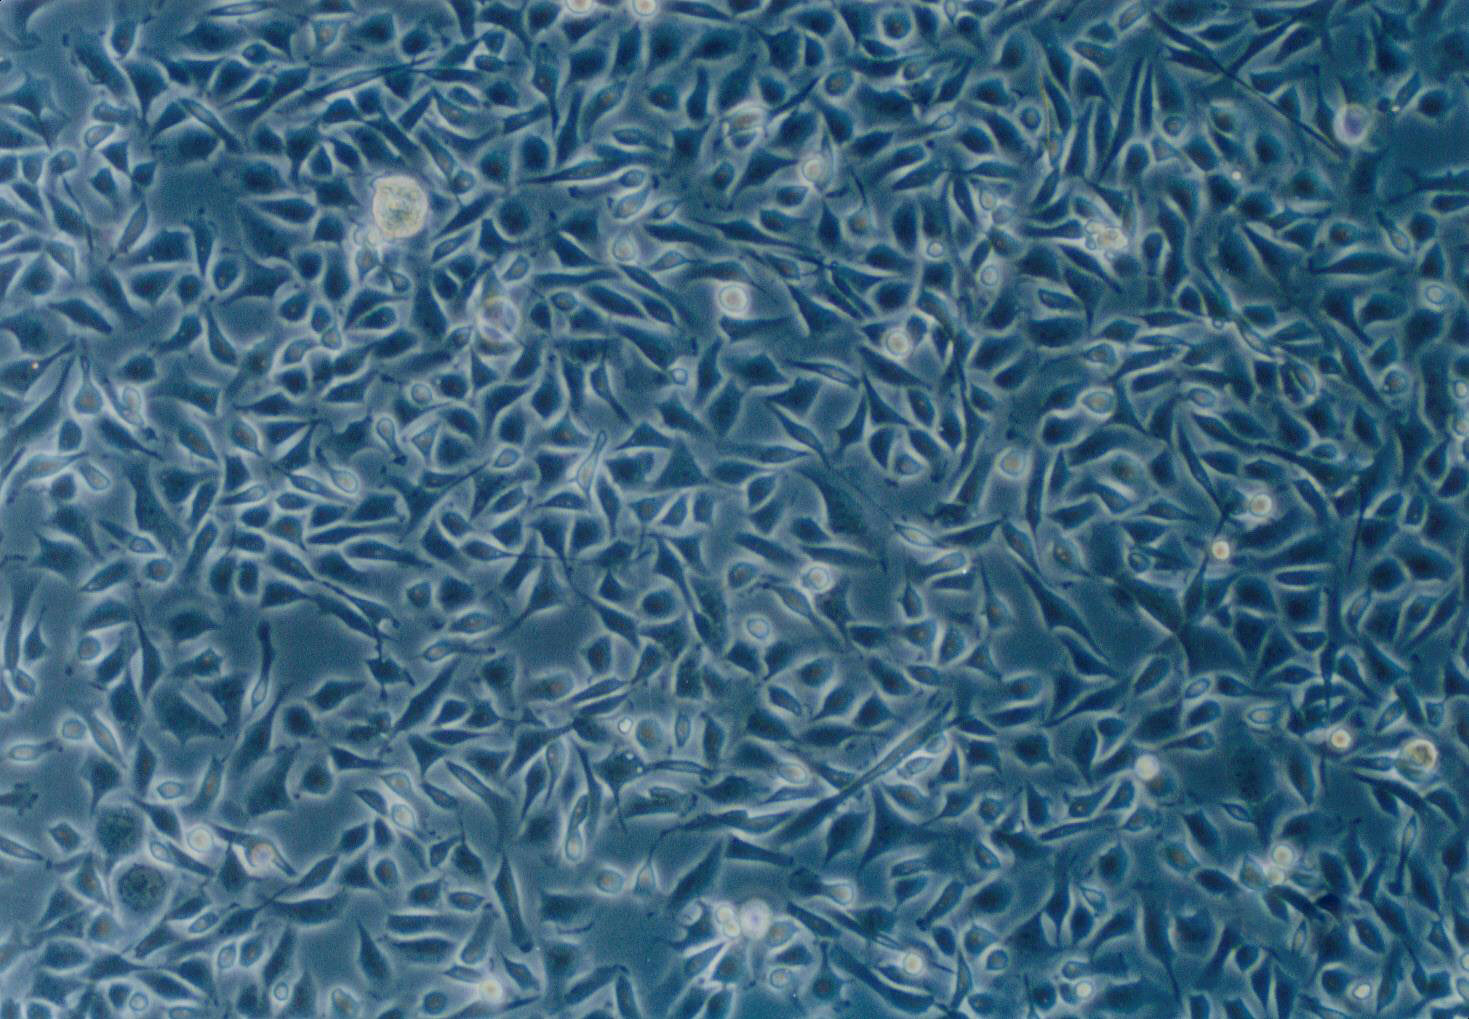 LUDLU-1 Cell|人肺癌鳞癌细胞